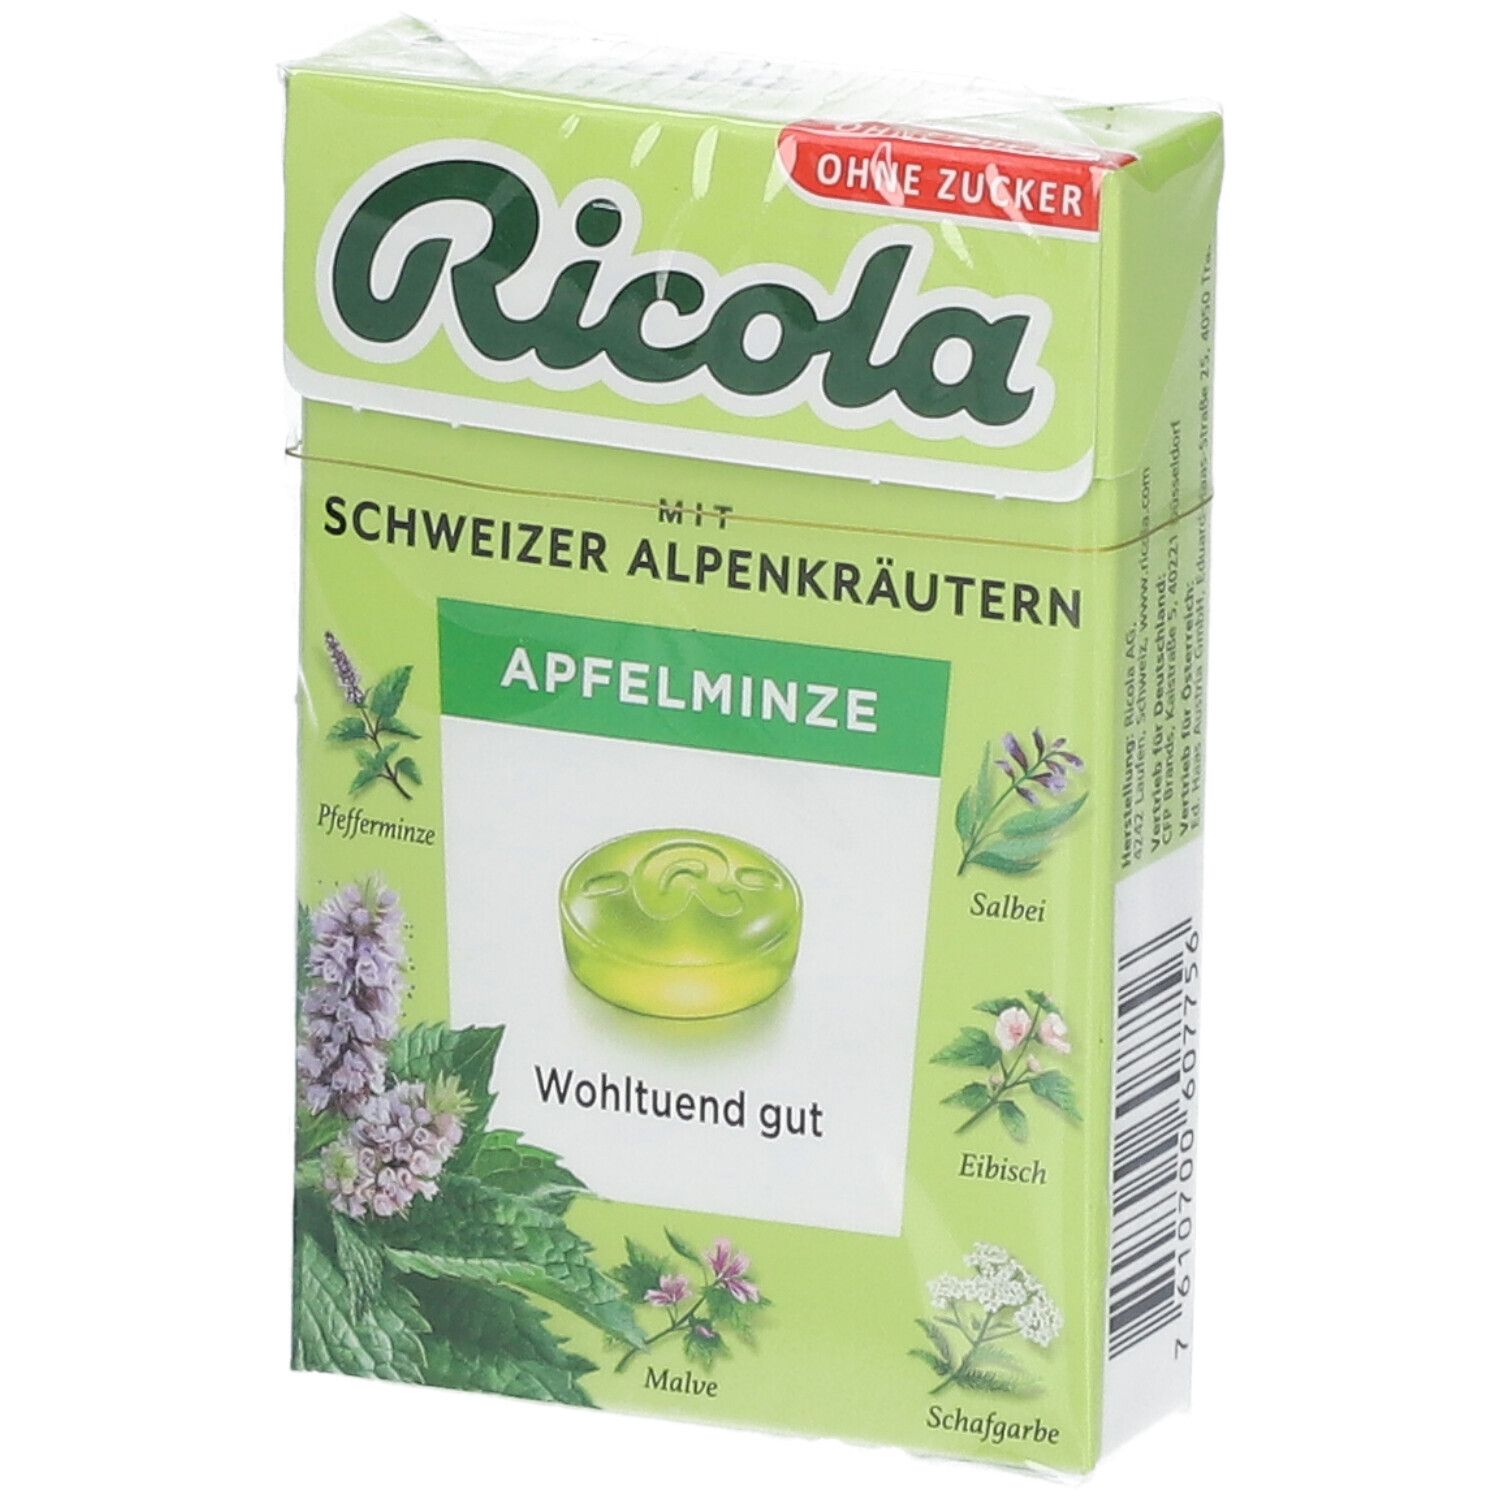 Ricola® Apfelminze ohne Zucker